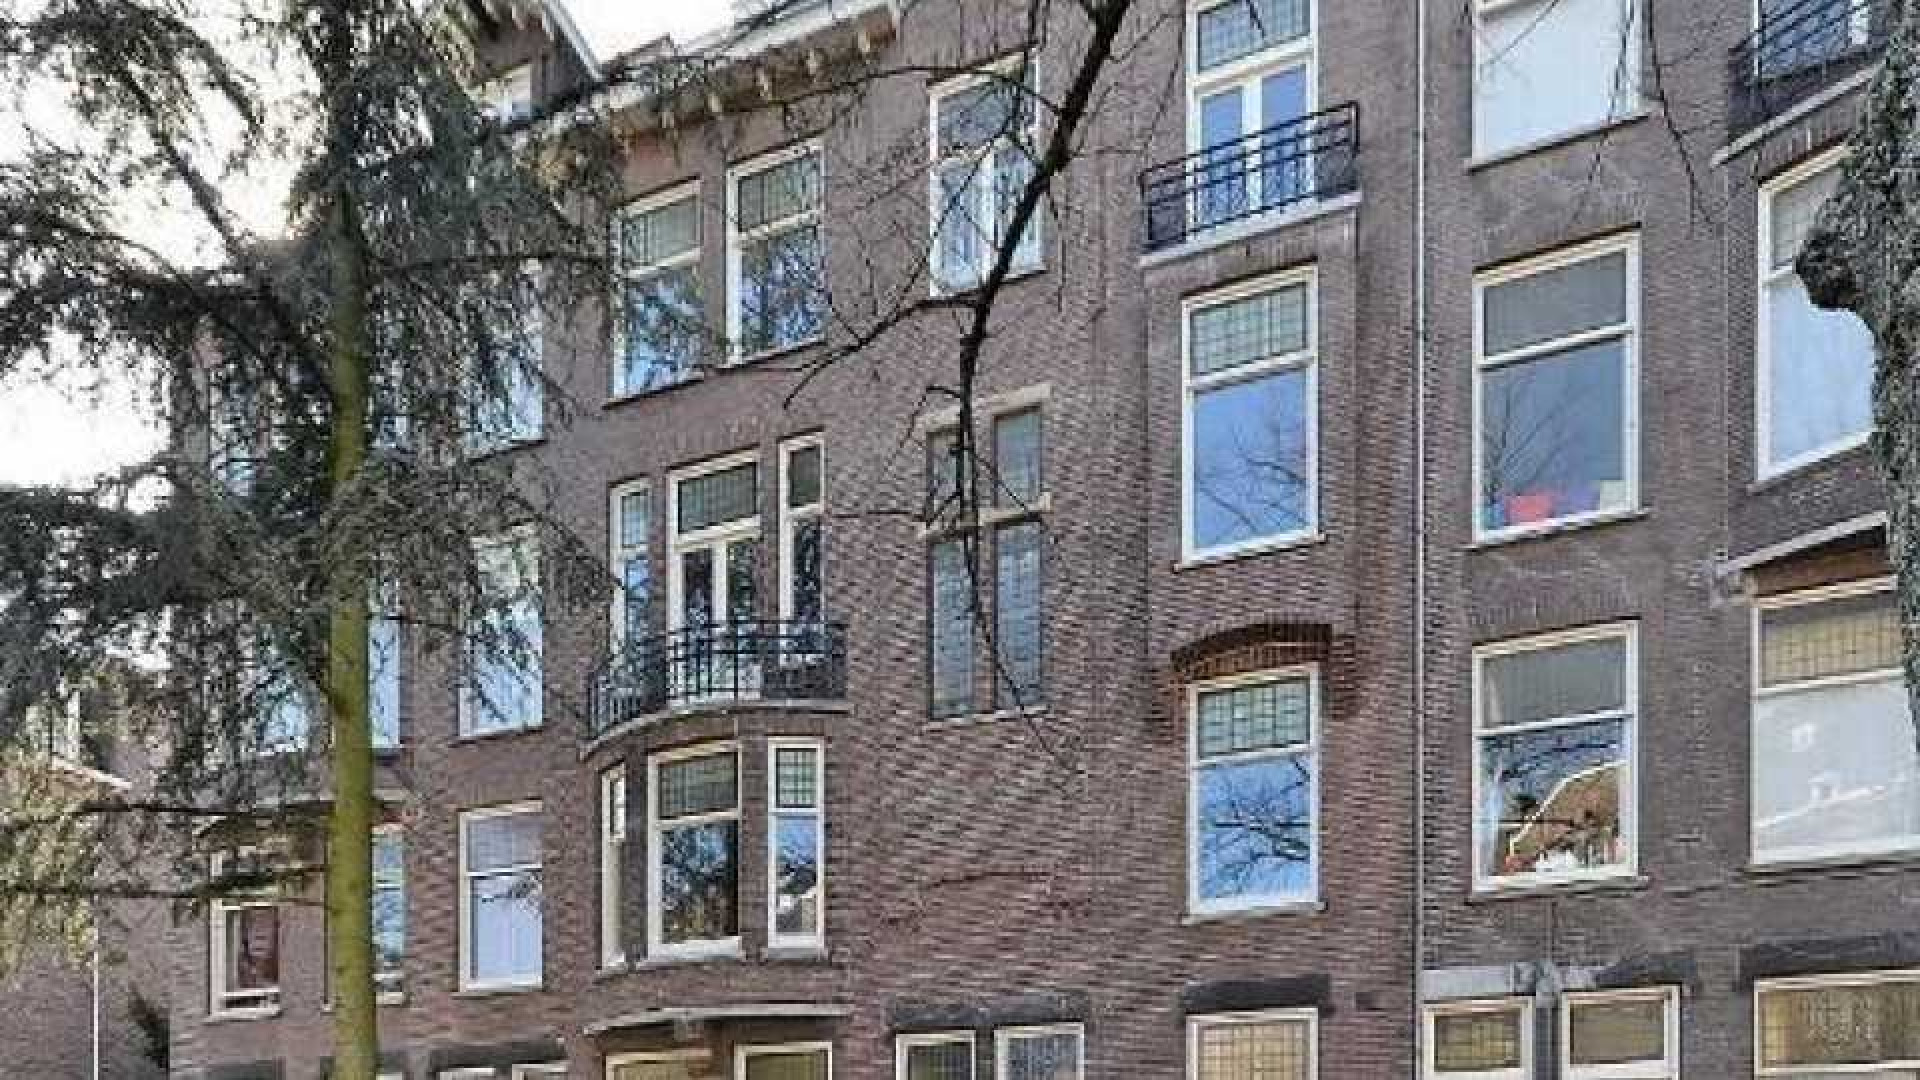 Frank Rijkaard zet zijn dubbele benedenhuis te huur. Zie foto's